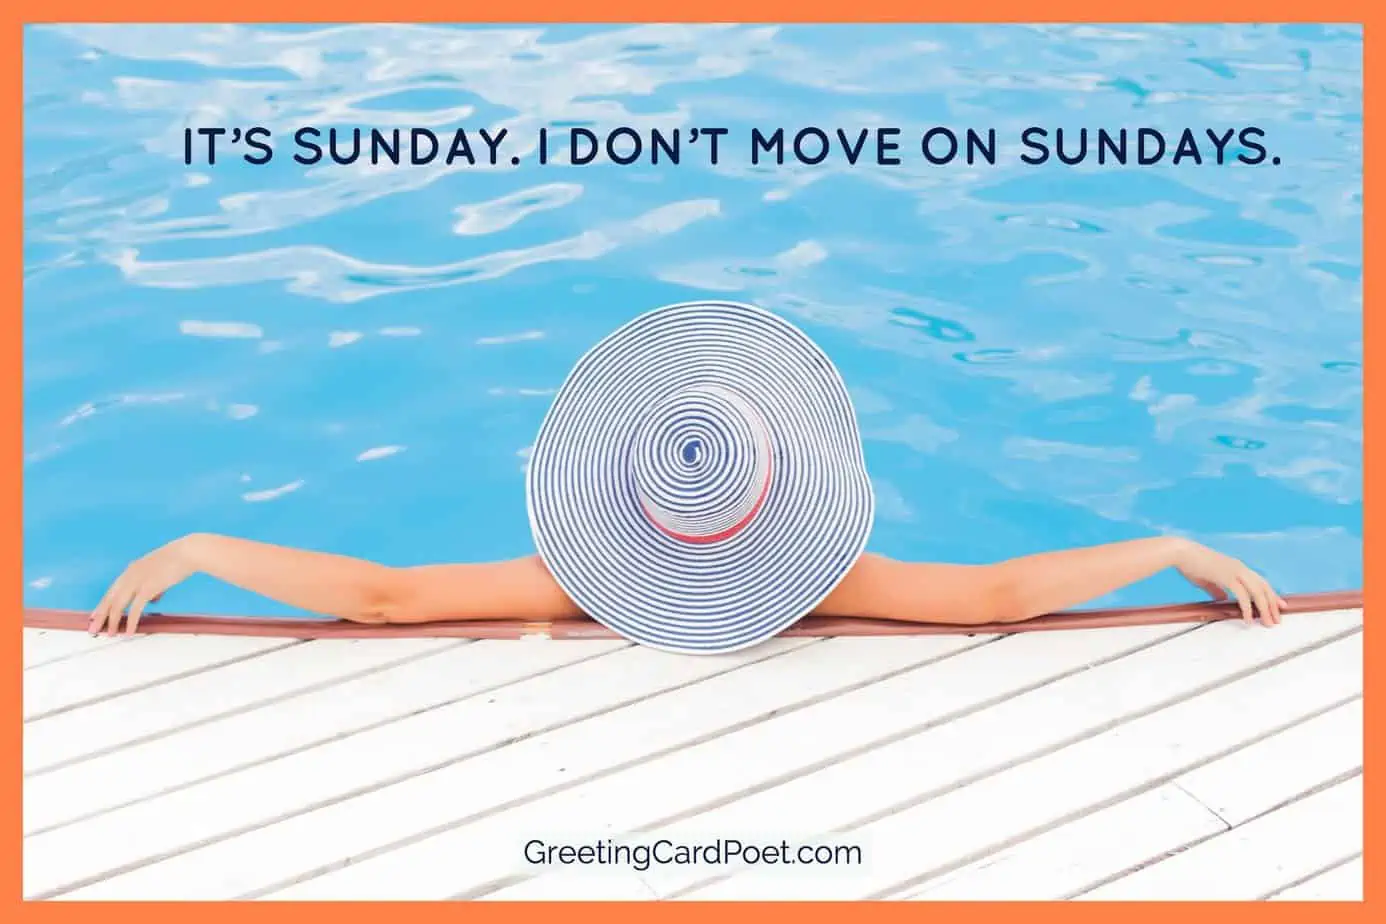 I don't move on Sundays.